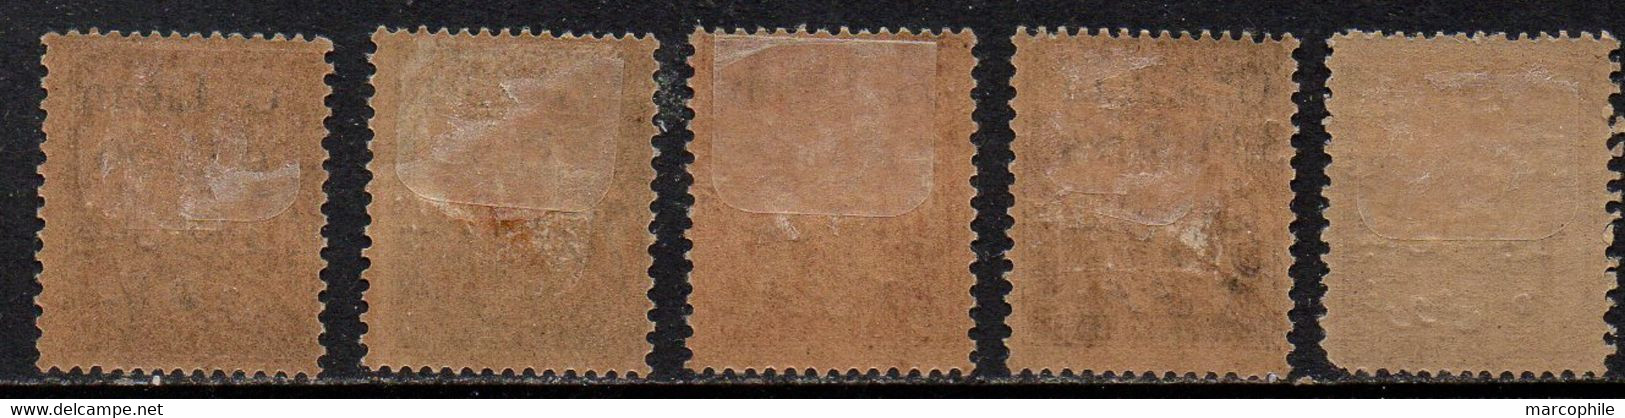 GRAND LIBAN / 1924 SERIE DUVAL TAXE # 6 A 10 * / COTE YVERT 40.00 EUROS (ref T1841) - Timbres-taxe